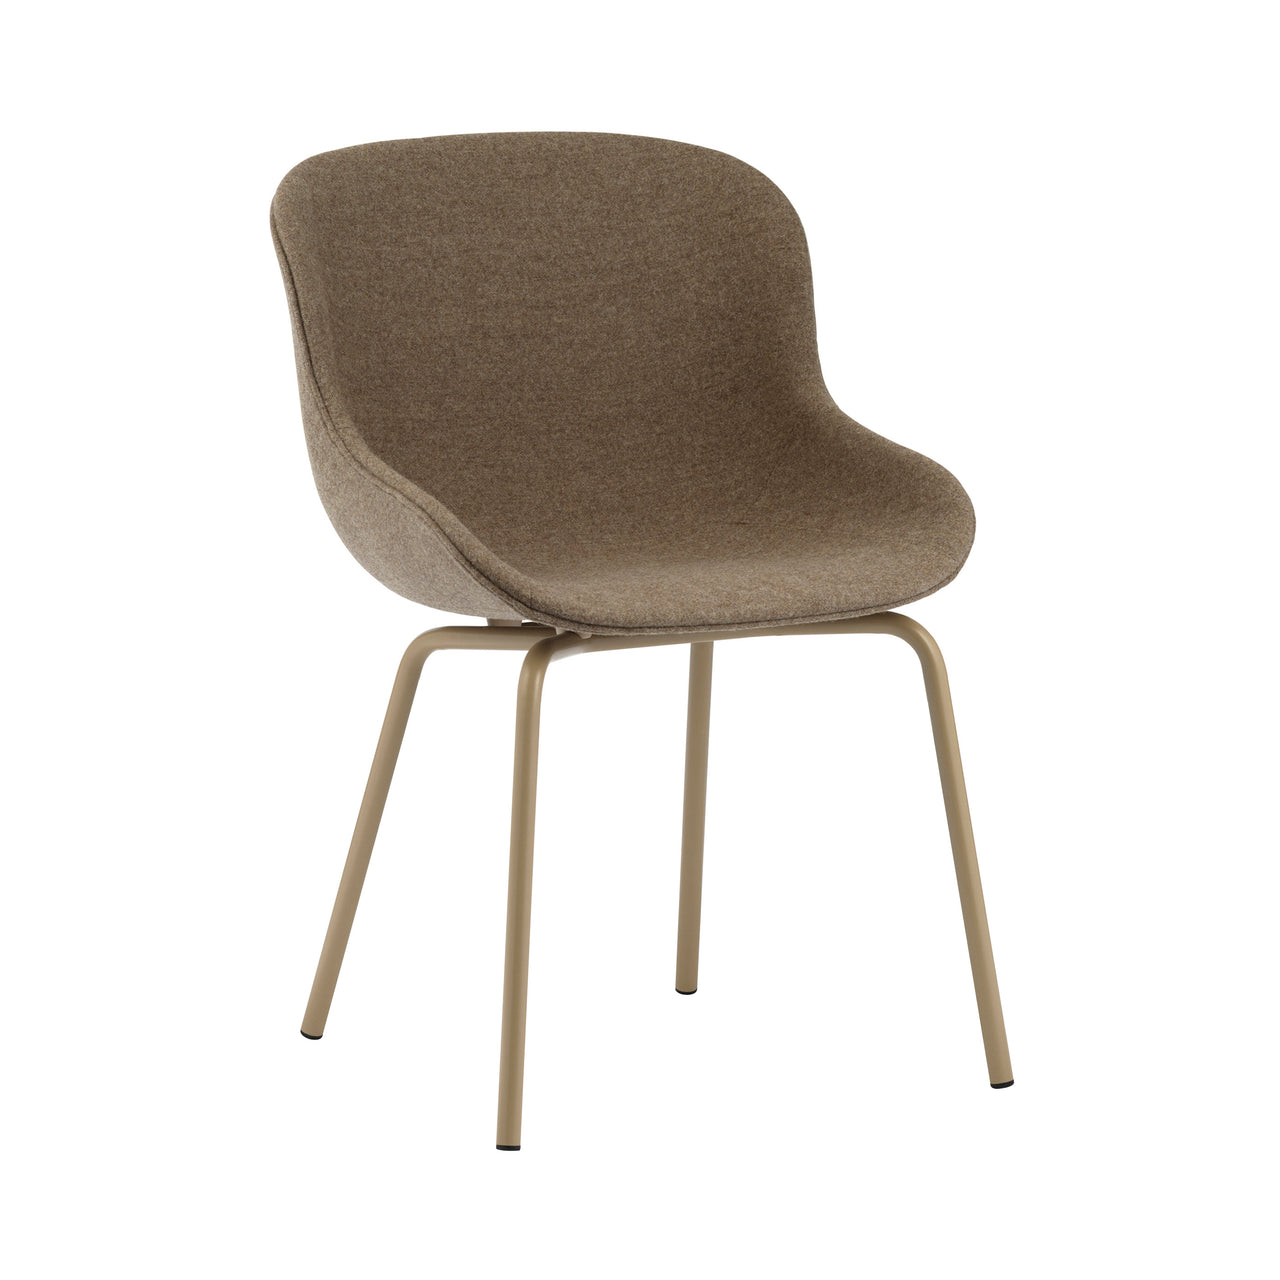 Hyg Chair: Steel Base + Full Upholstered + Sand